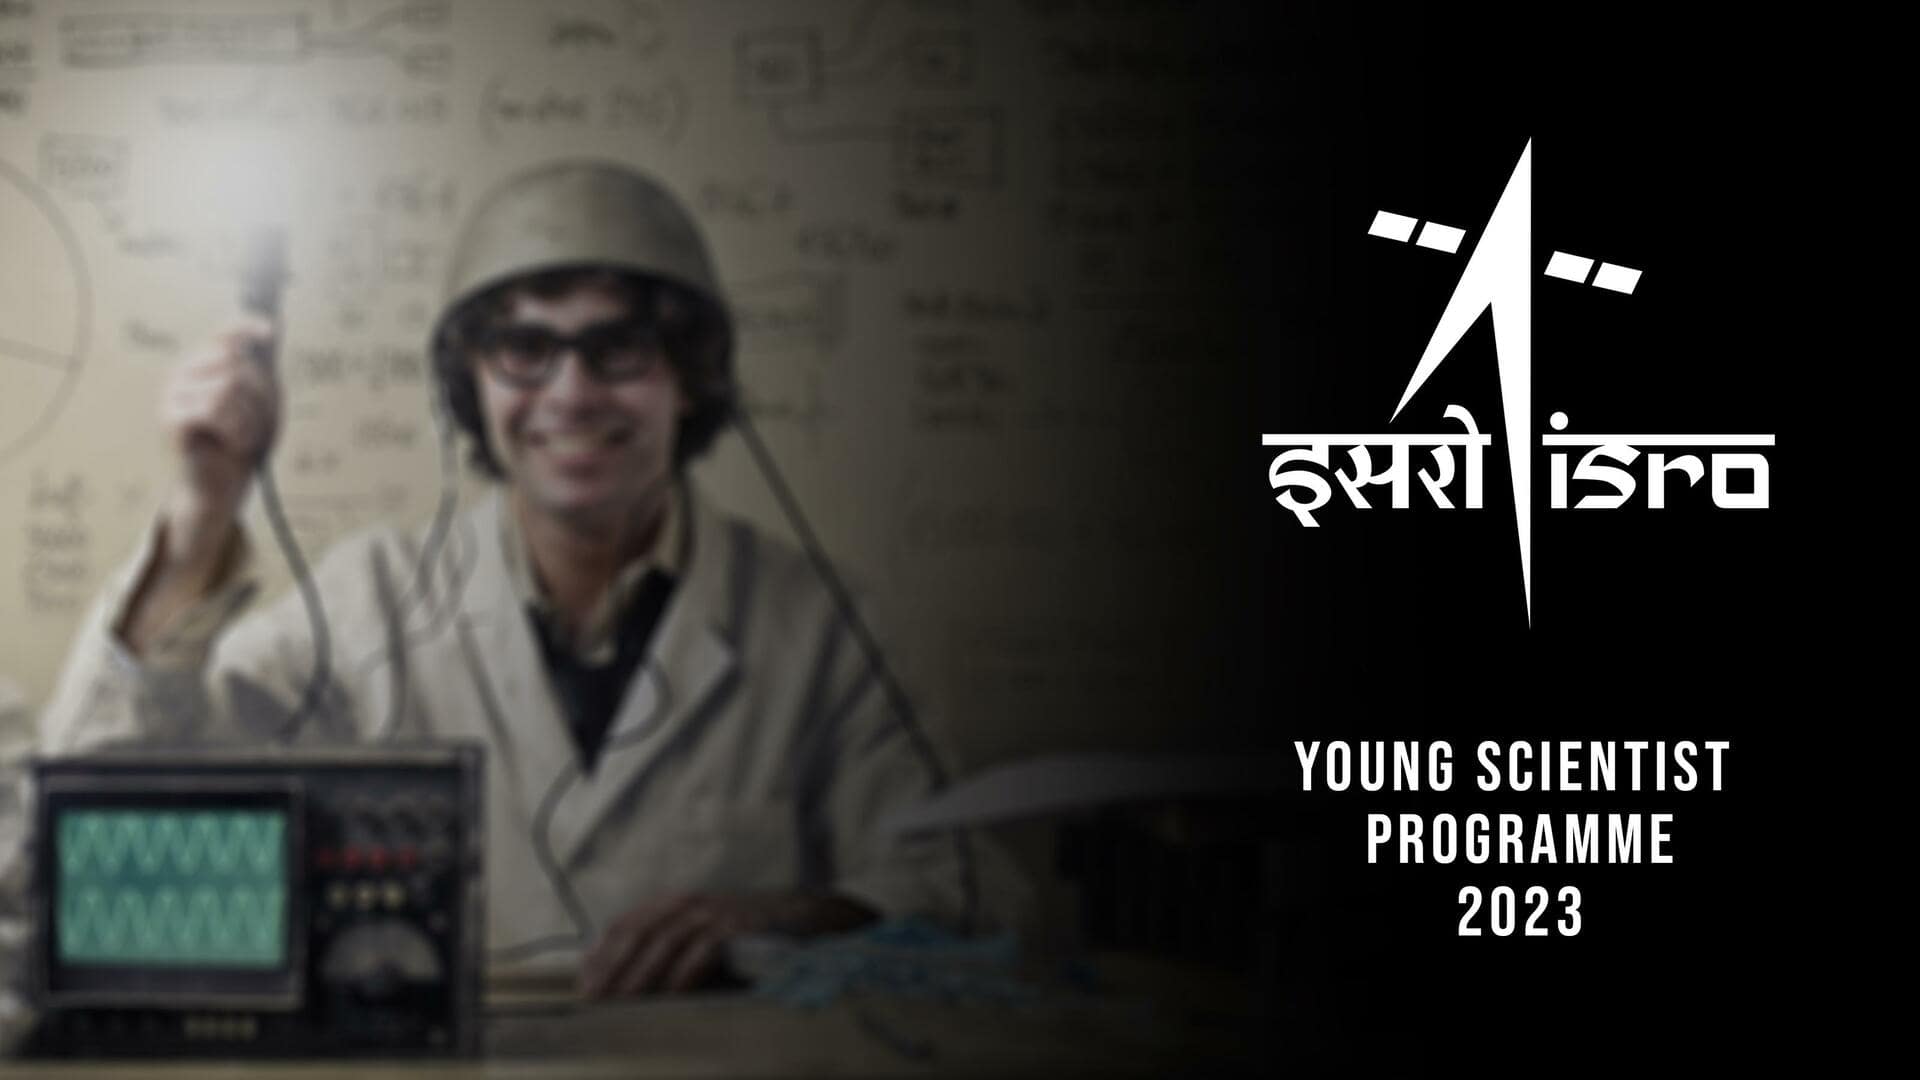 क्या है ISRO का यंग साइंटिस्ट कार्यक्रम? छात्रों को मिलेगा अंतरिक्ष को समझने का मौका